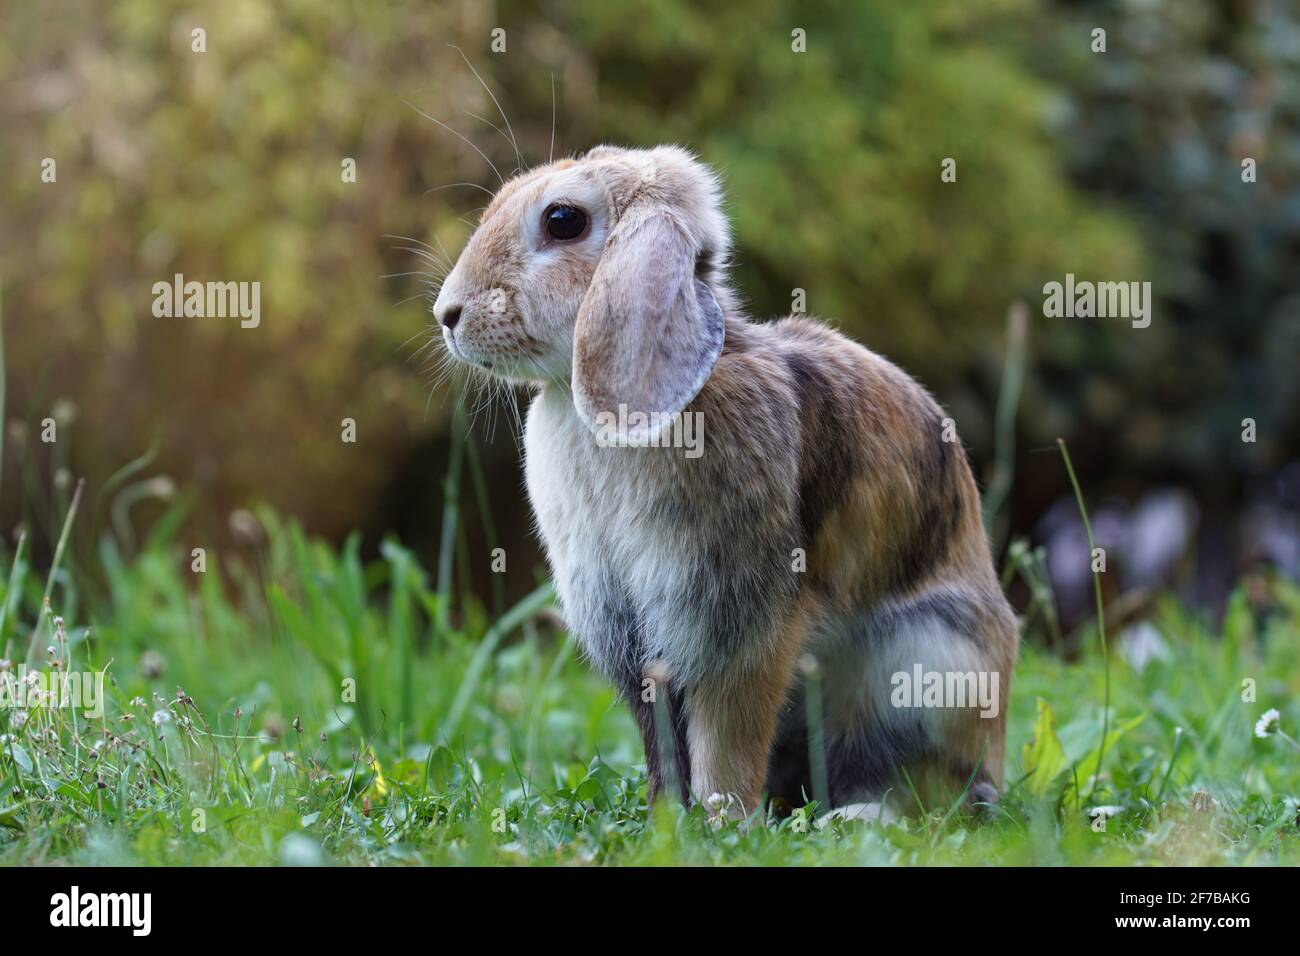 lop ha allevato coniglio di ariete nano seduto sul prato in attento posizione Foto Stock